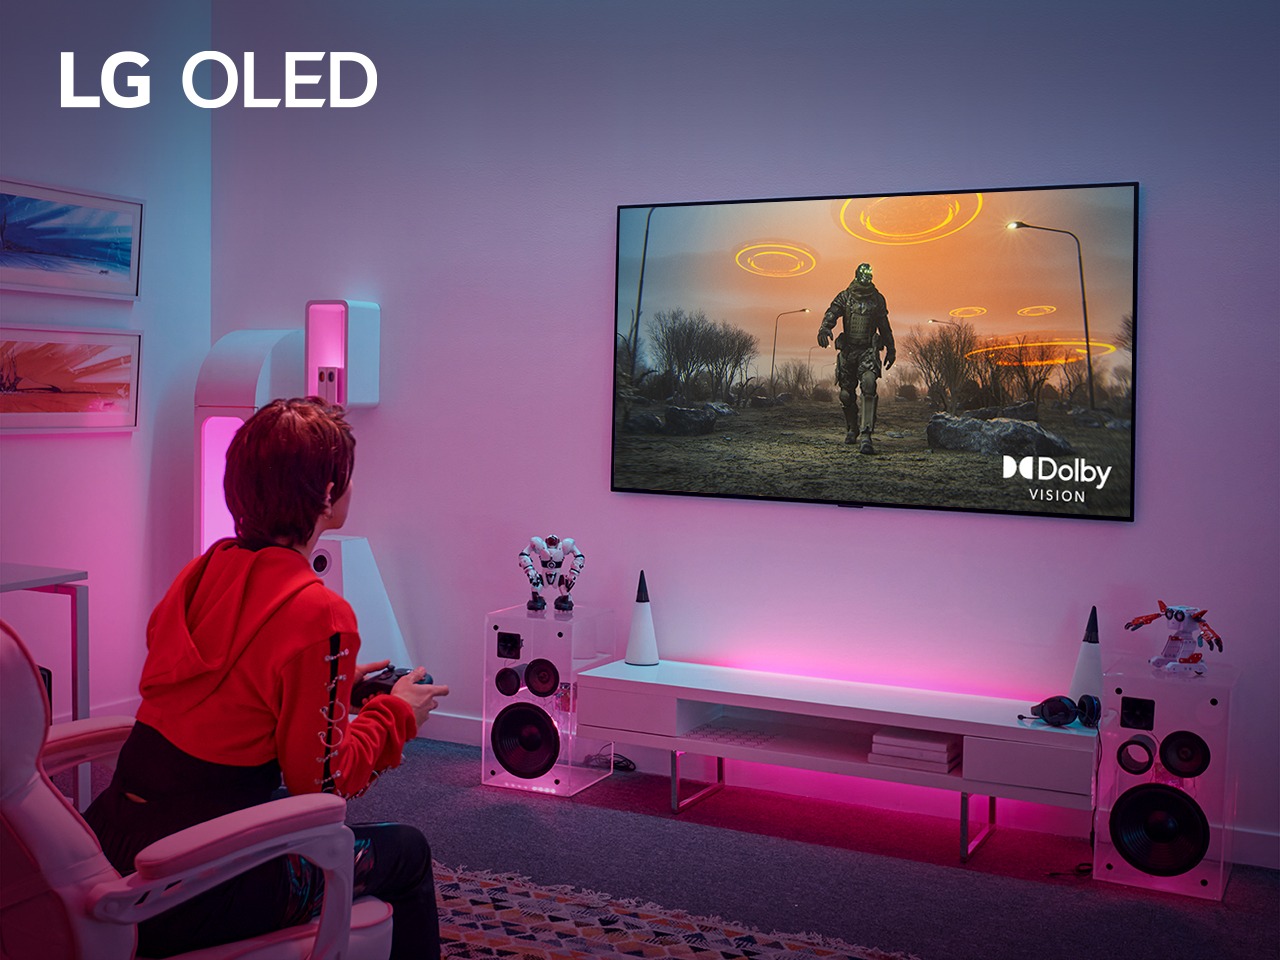 Al jugar en televisores LG Premium tendrás una nueva experiencia con la última actualización de Dolby Vision 